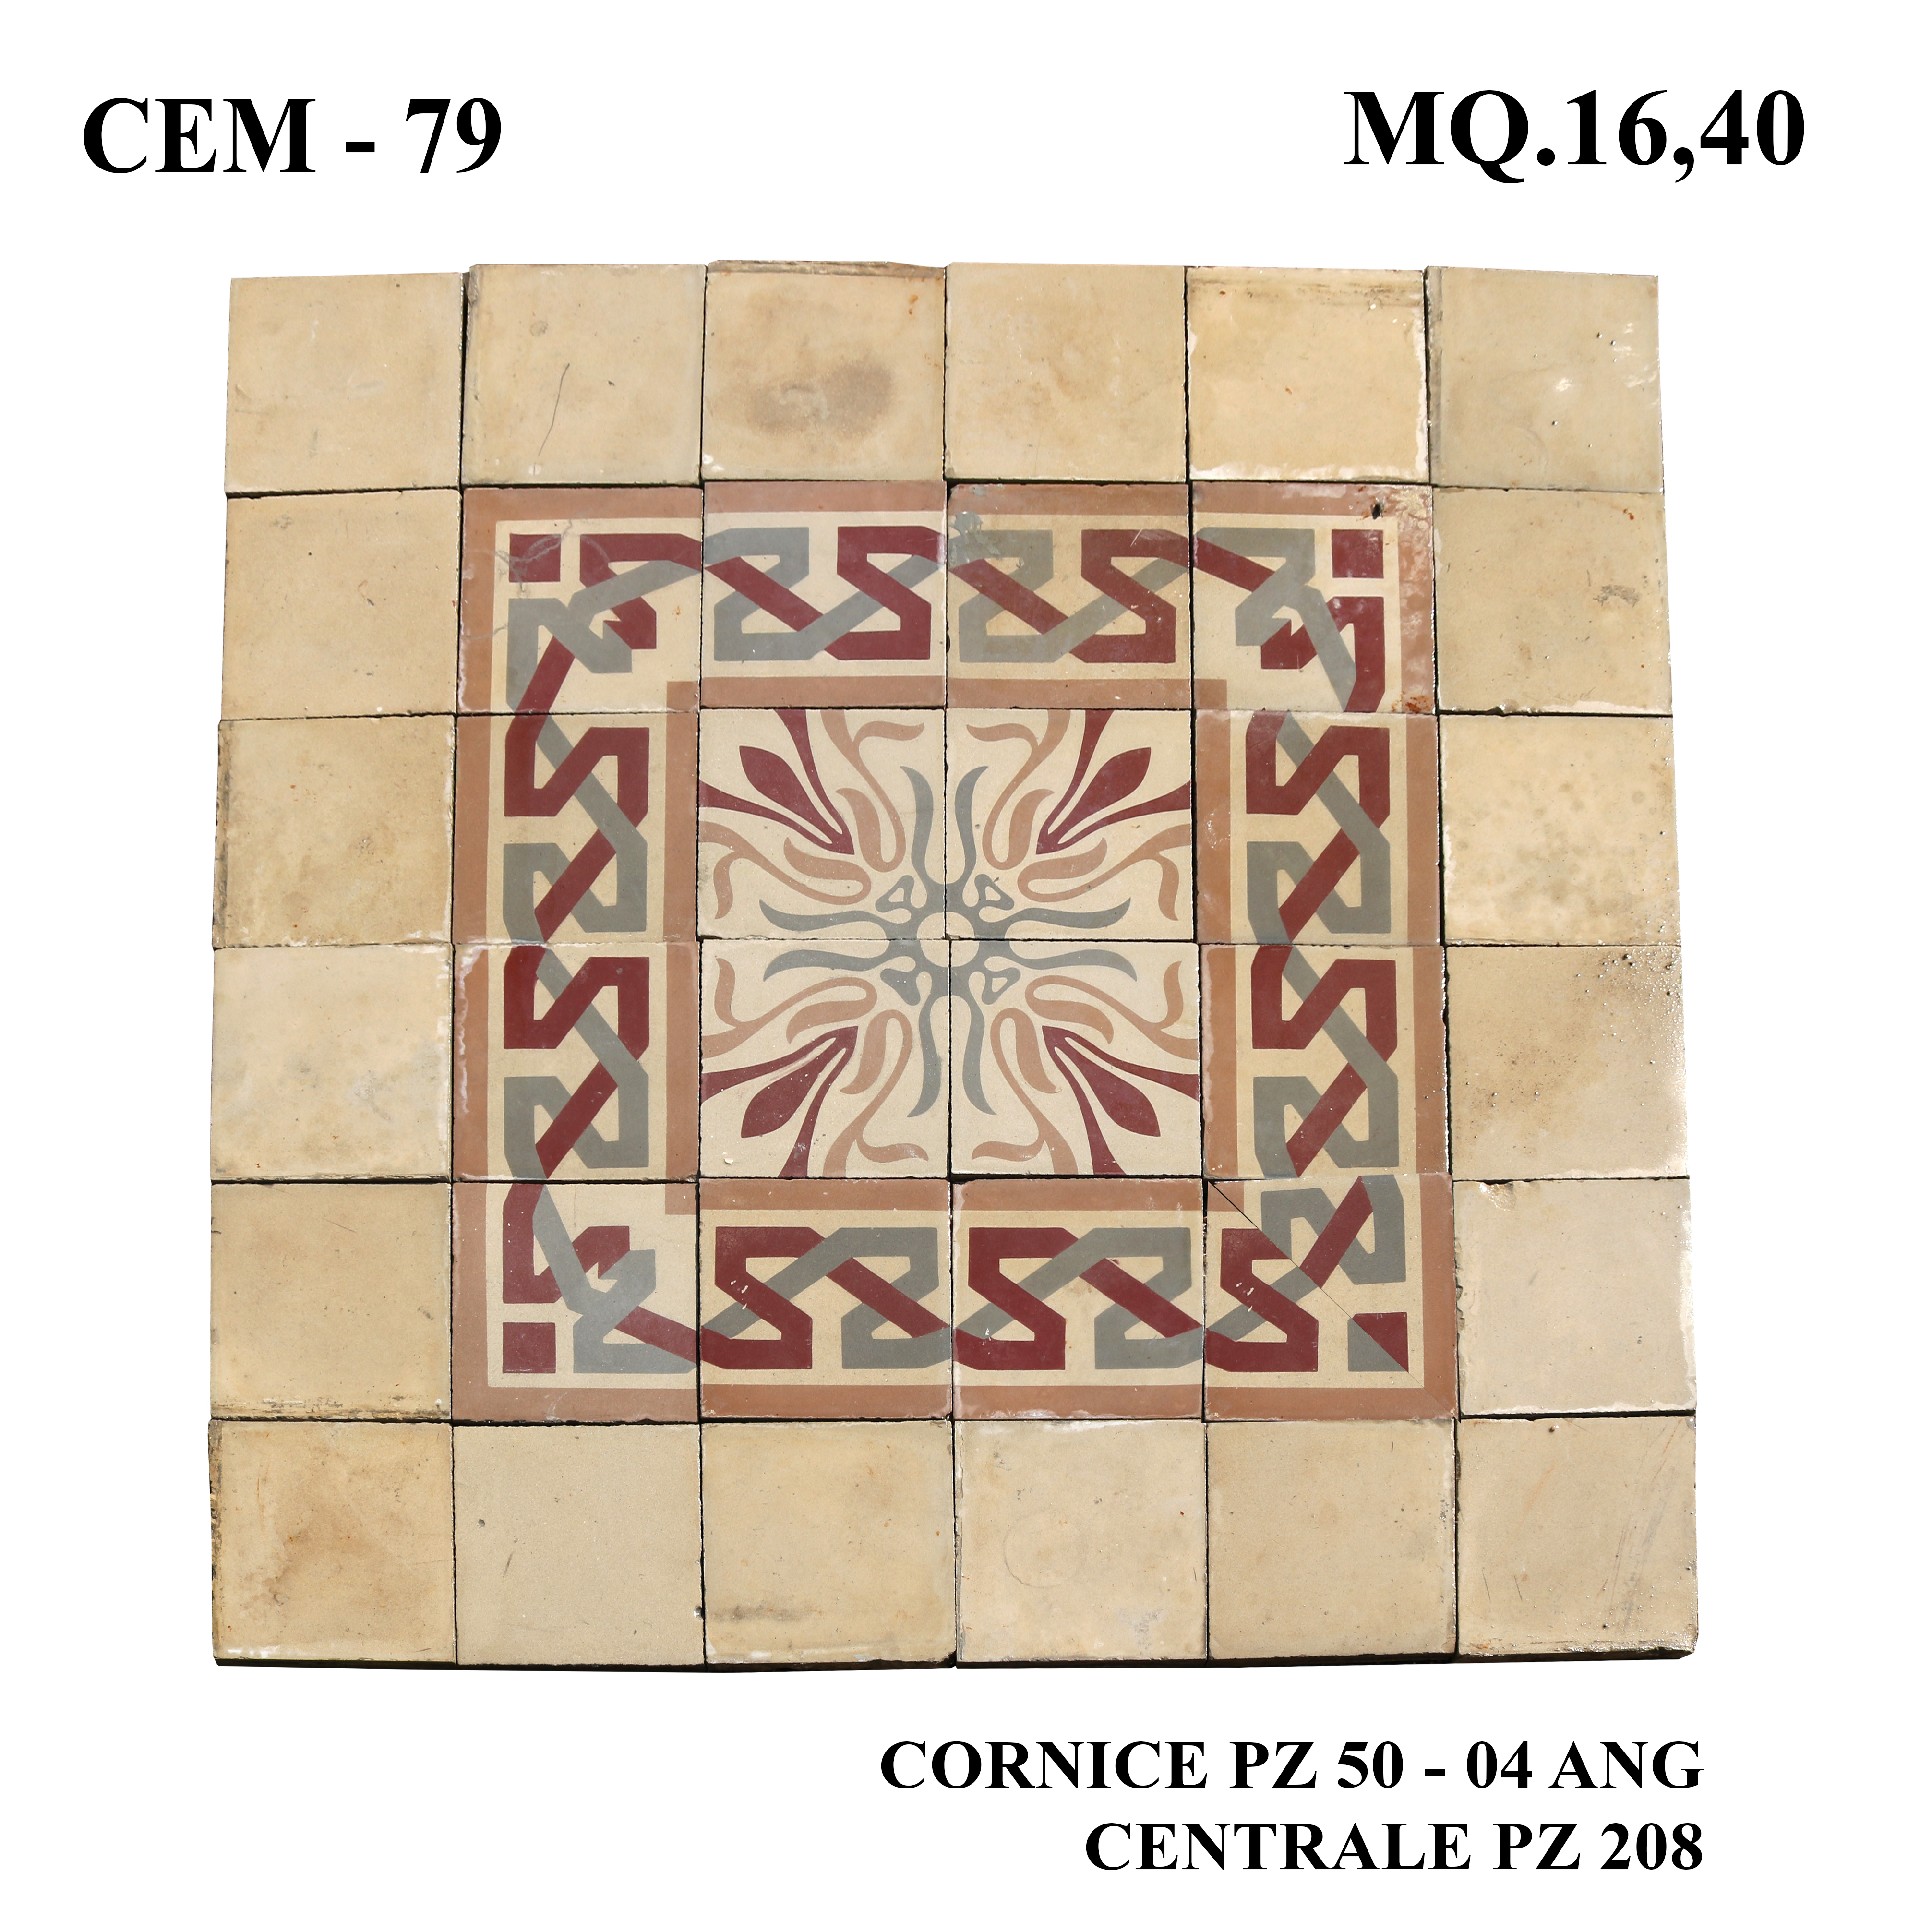 Antica pavimentazione in cementine cm 25x25. - Cementine e Graniglie - Pavimentazioni Antiche - Prodotti - Antichità Fiorillo